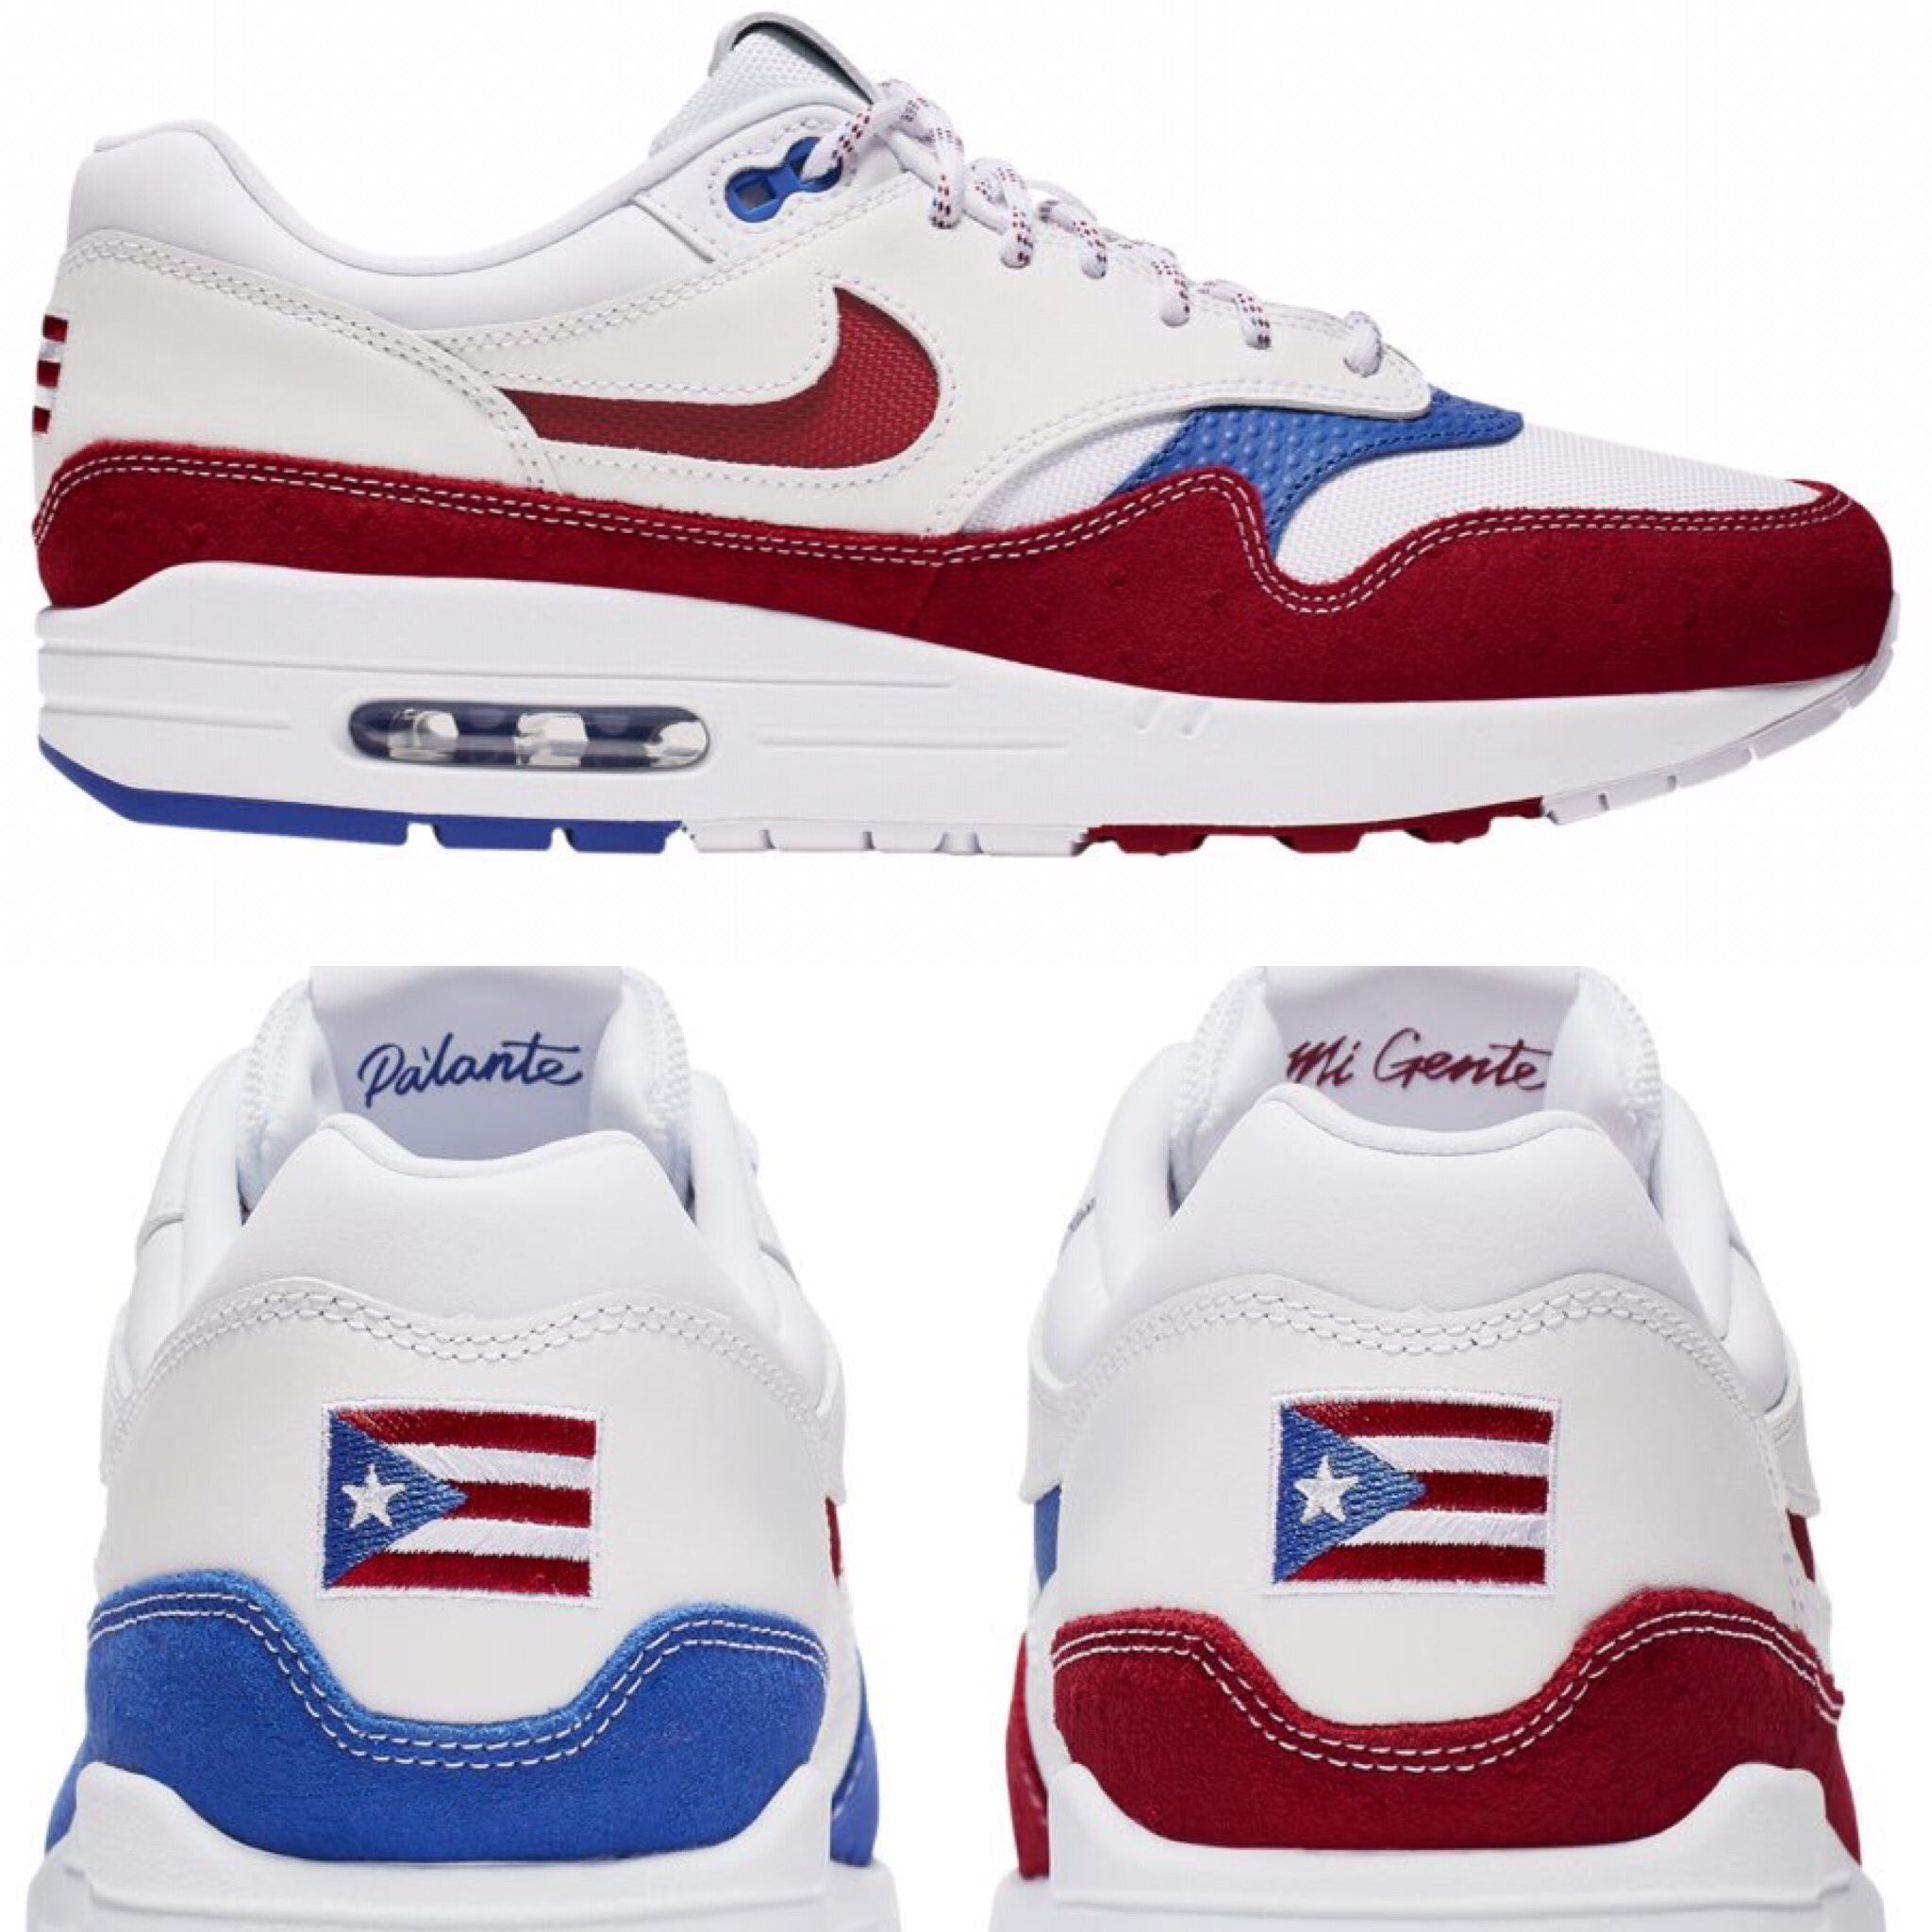 fútbol americano Tren Similar Maratonespr.com on Twitter: "Compañía Nike lanza unos tenis con la bandera  de Puerto Rico. Los mismos también llevan un mensaje impreso que lee  “Pa'lante mi gente”. El modelo de tenis son los